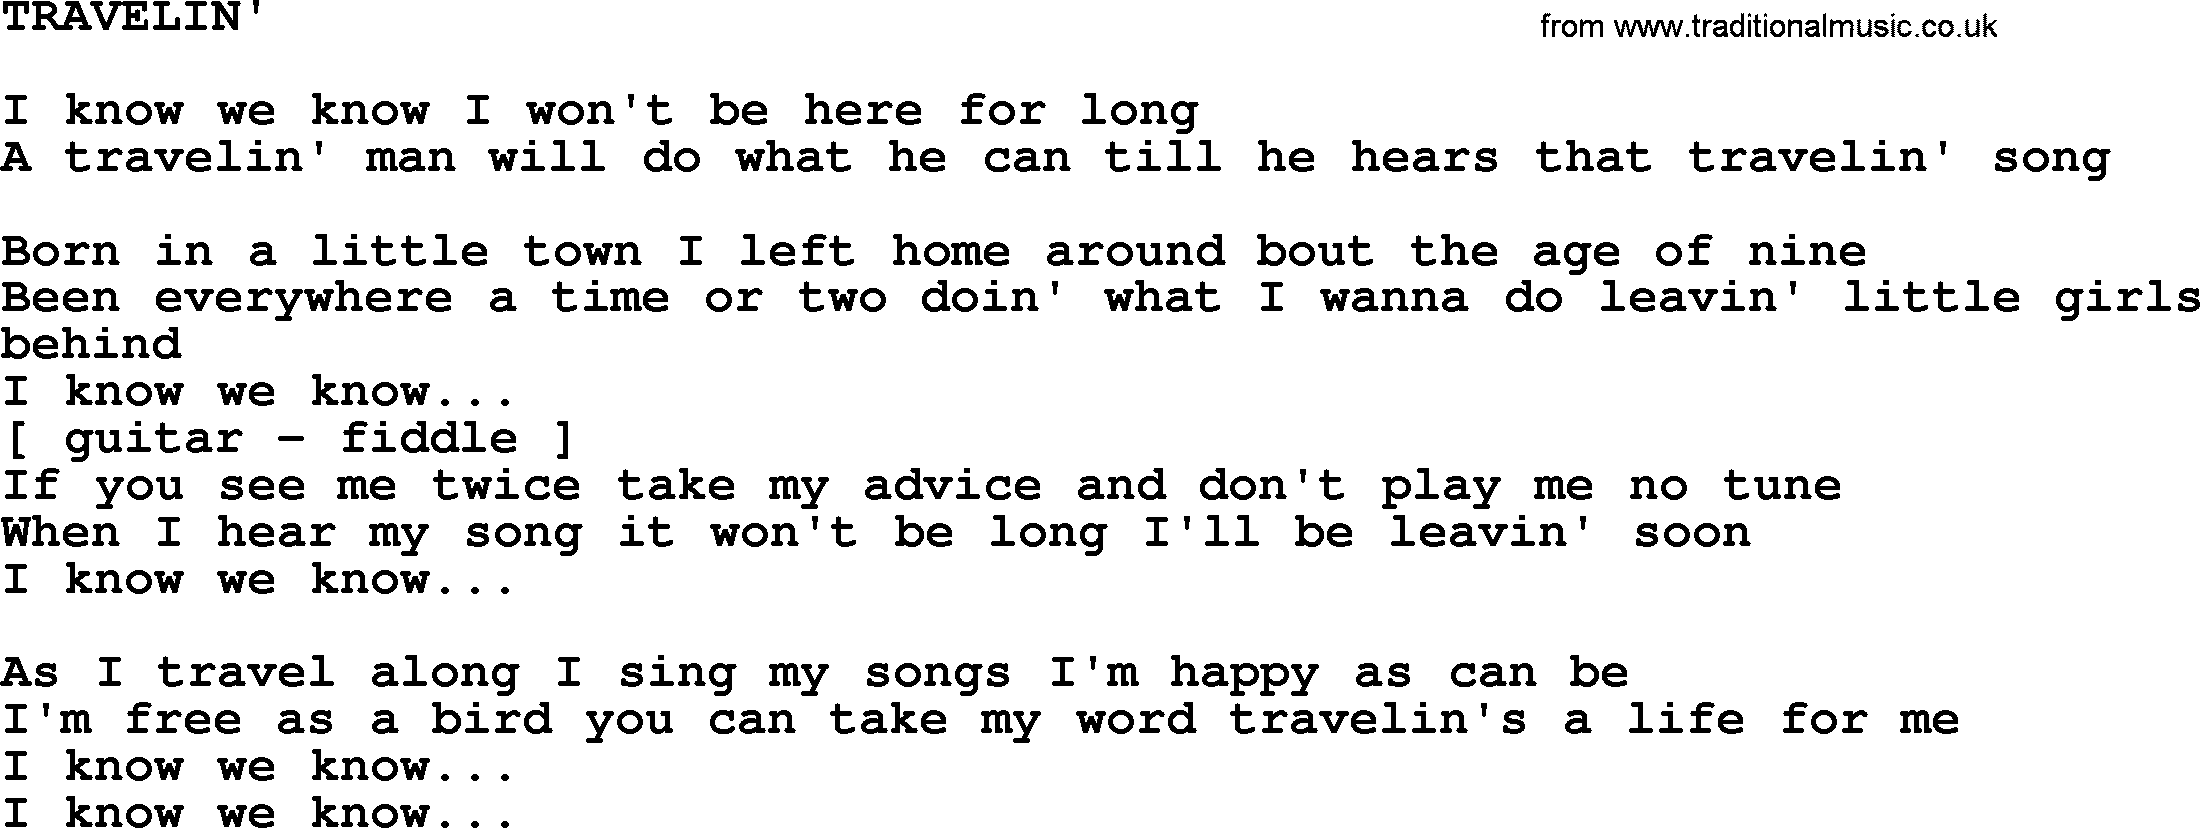 Merle Haggard song: Travelin', lyrics.